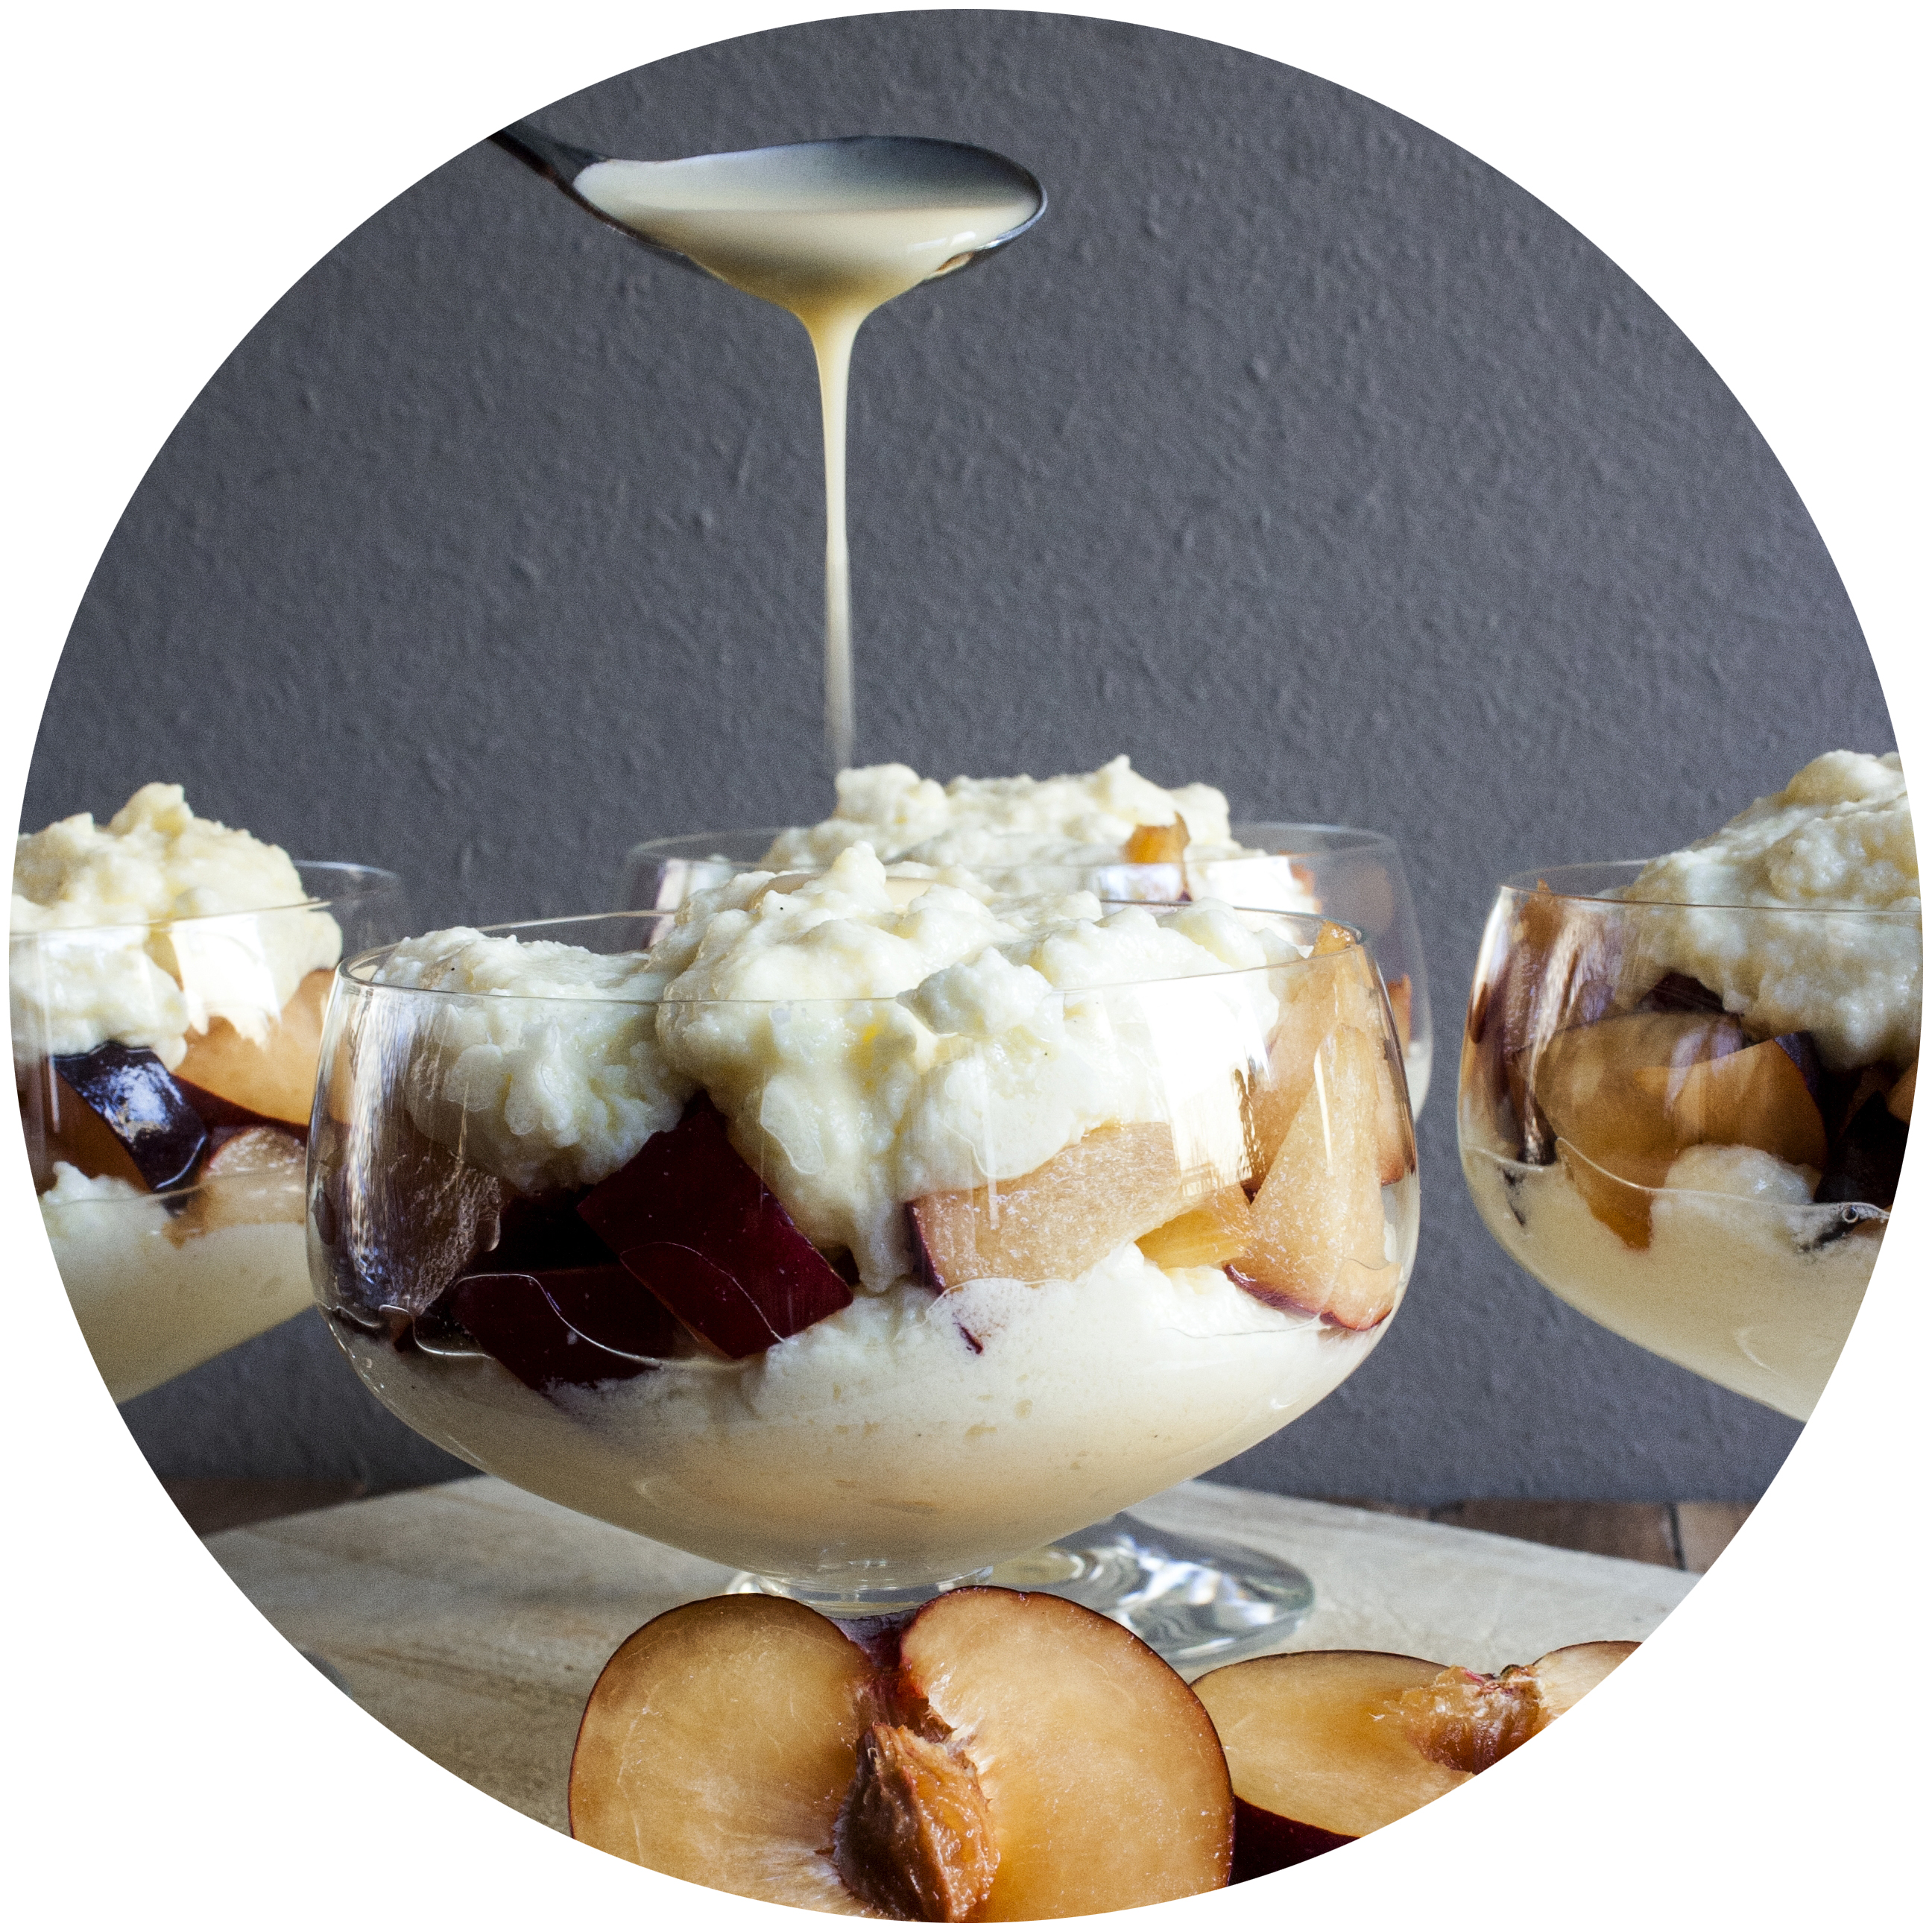 Der heilige Gral der leichten Desserts - Vanille-Joghurt-Creme mit frischem Obst | Zuckergewitter.de